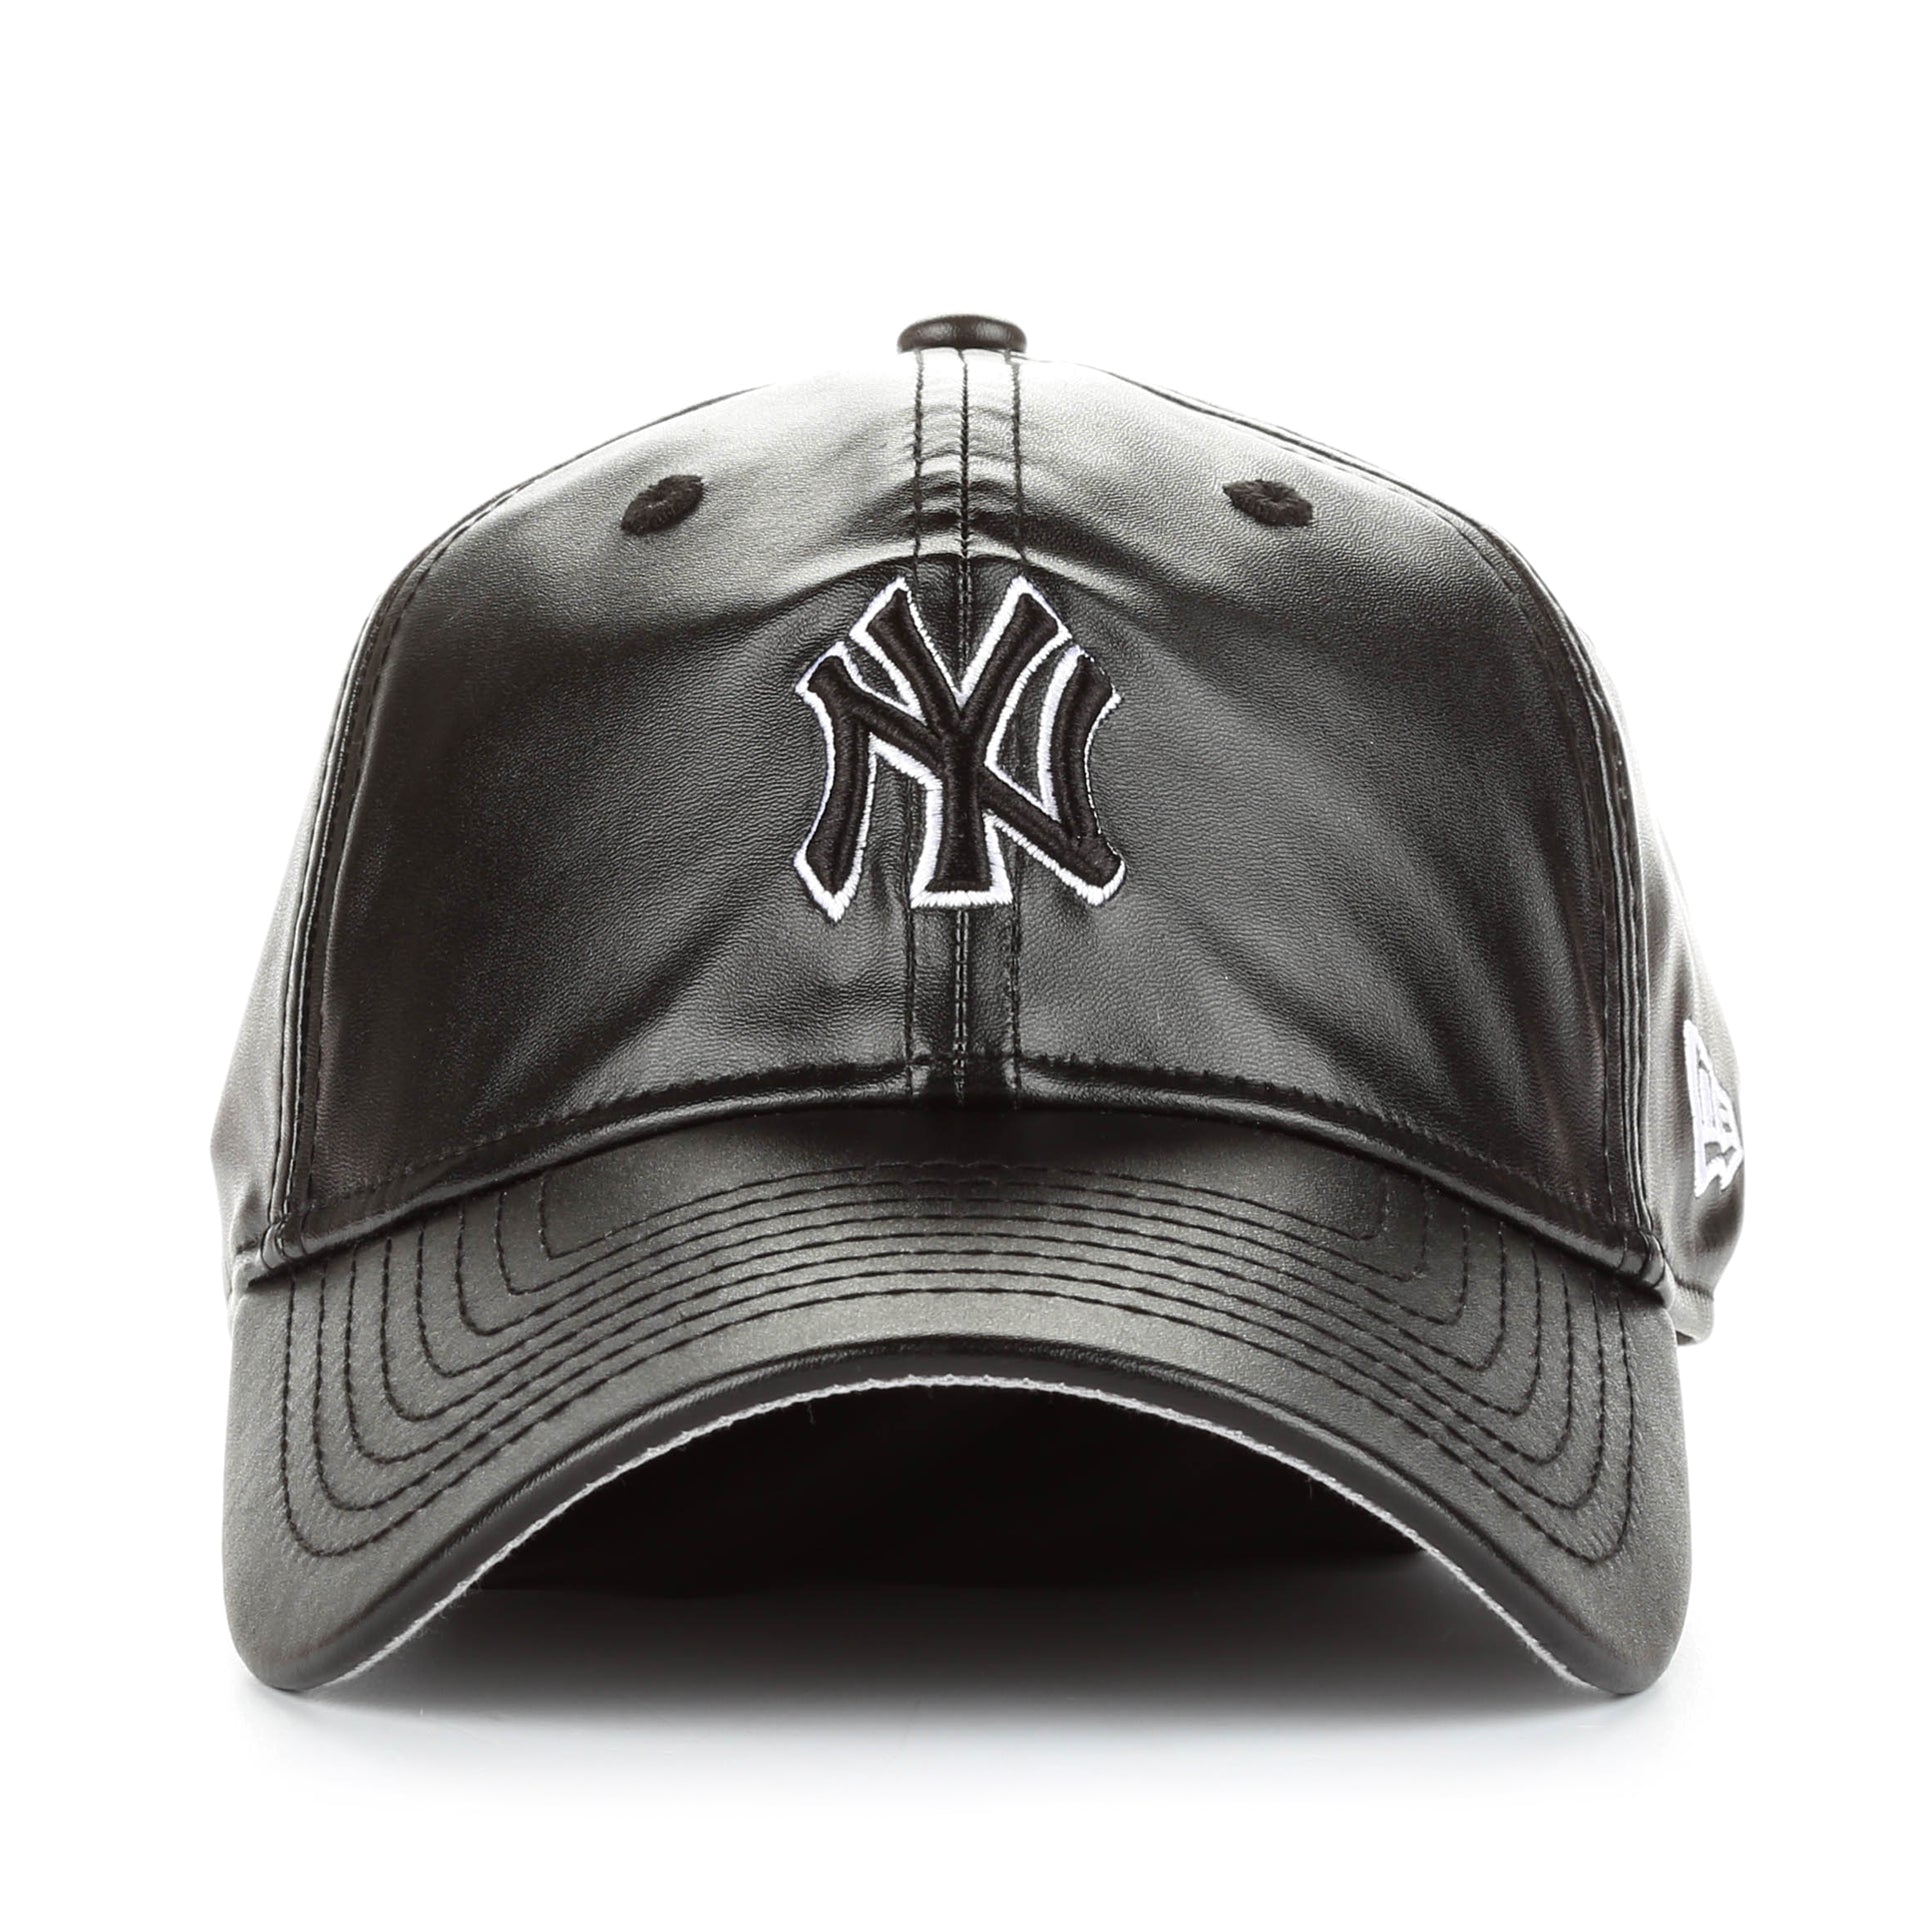 New Era Women's New York Yankees Navy T-Shirt